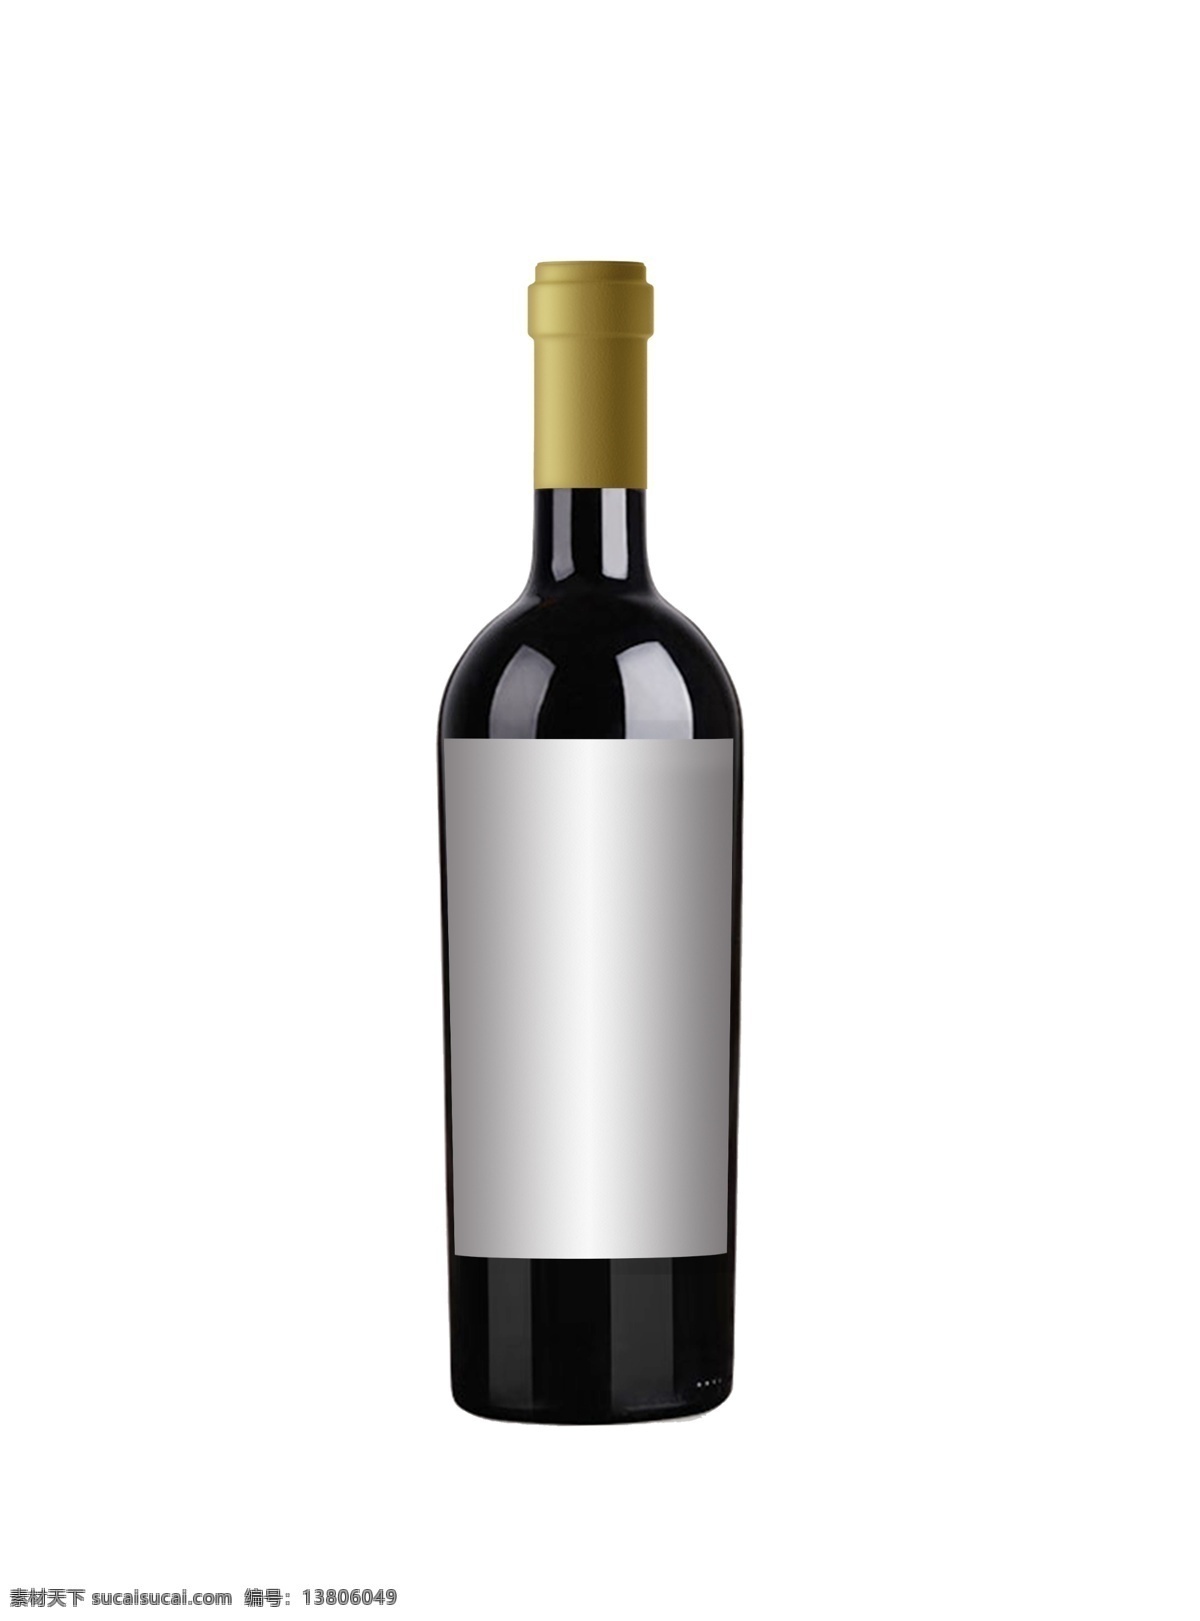 锥形 瓶 红酒 样机 锥形瓶 效果图 葡萄酒 分层